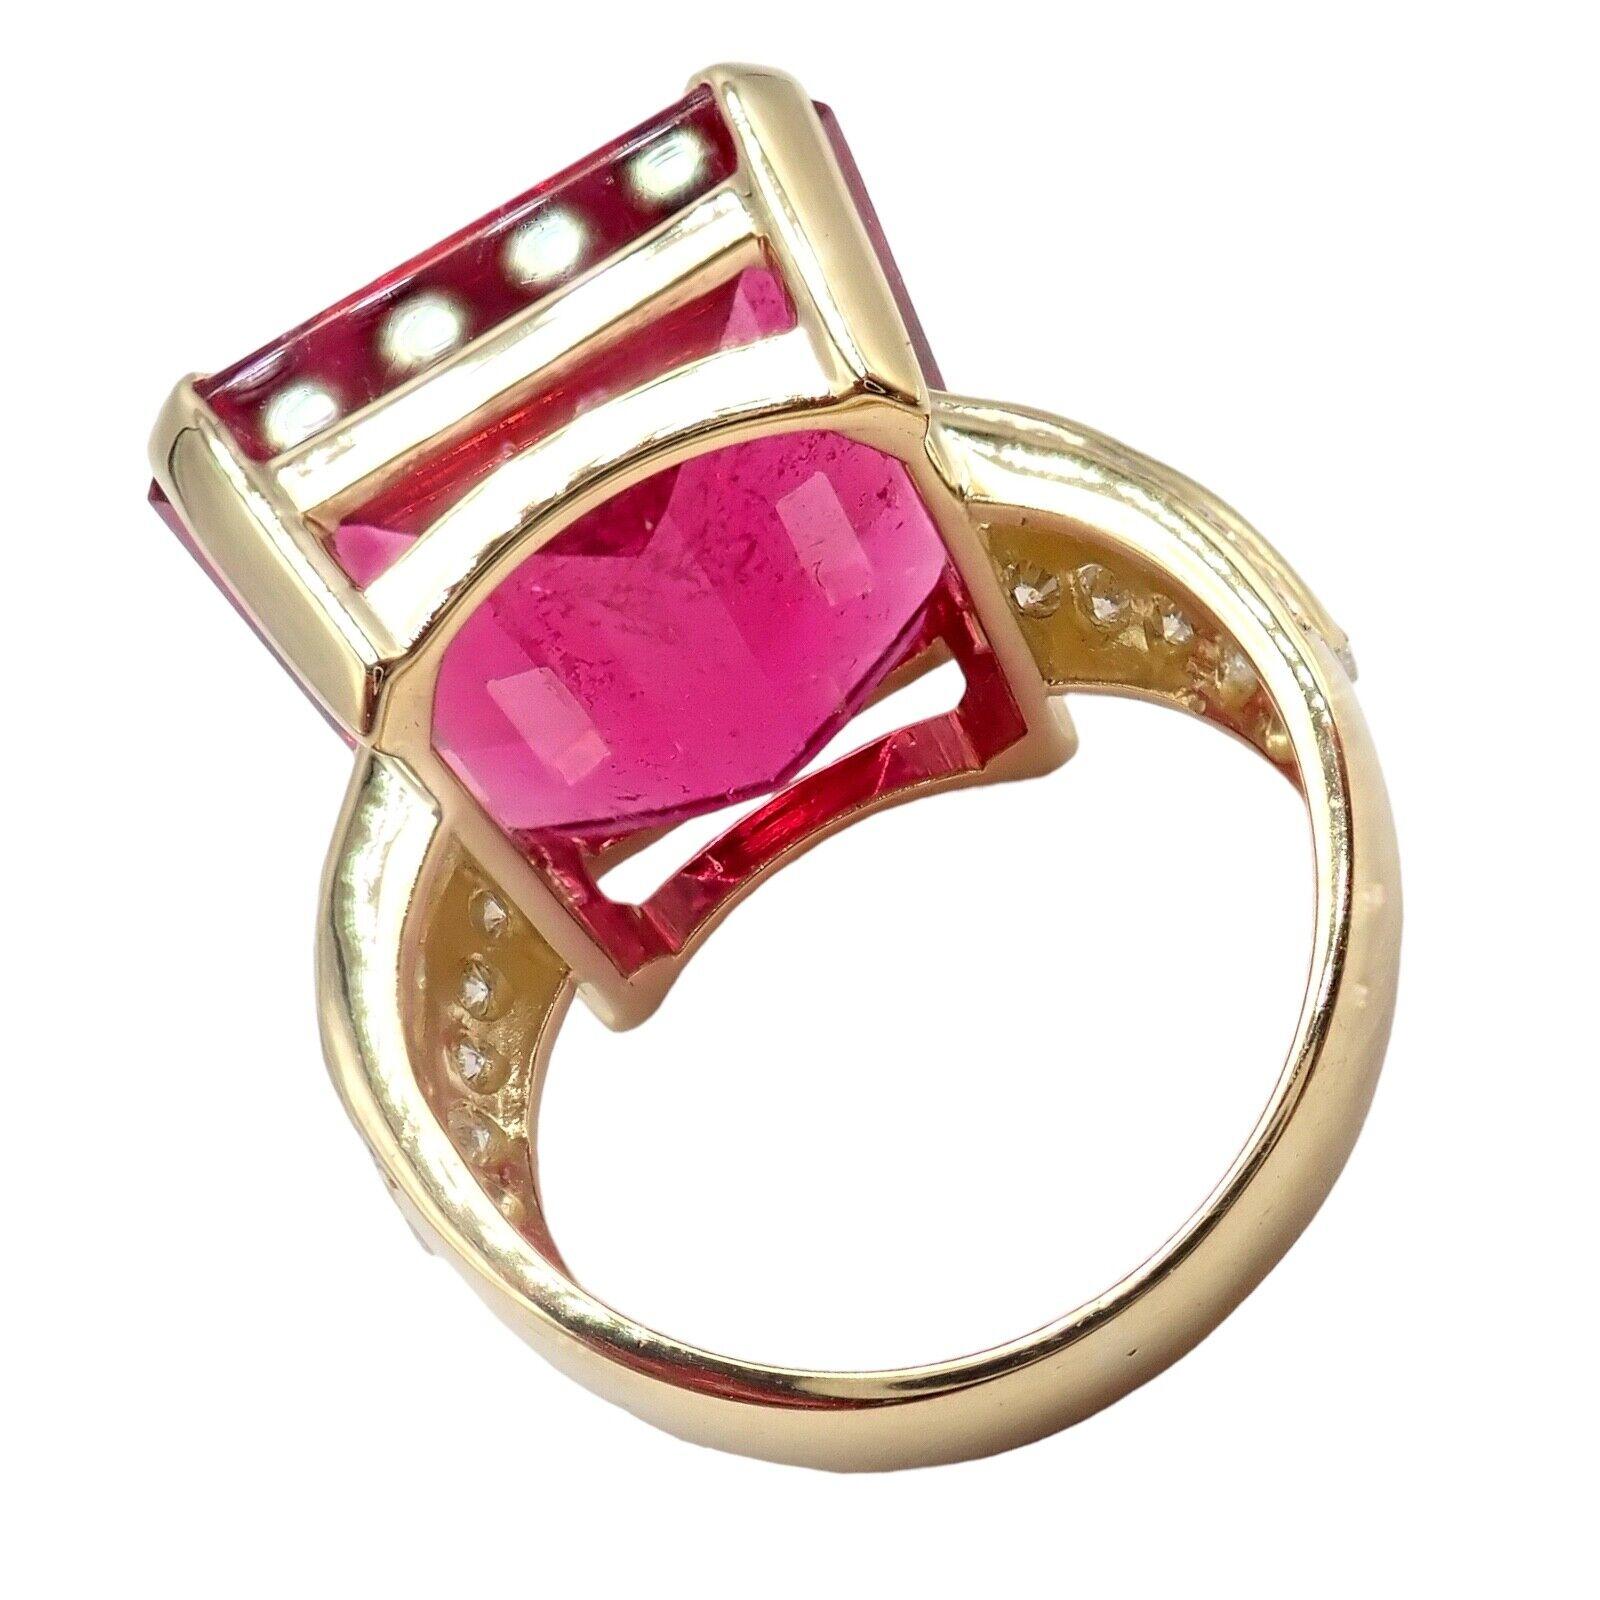 H. Stern Diamond Large Pink Tourmaline Yellow Gold Statement Ring 7